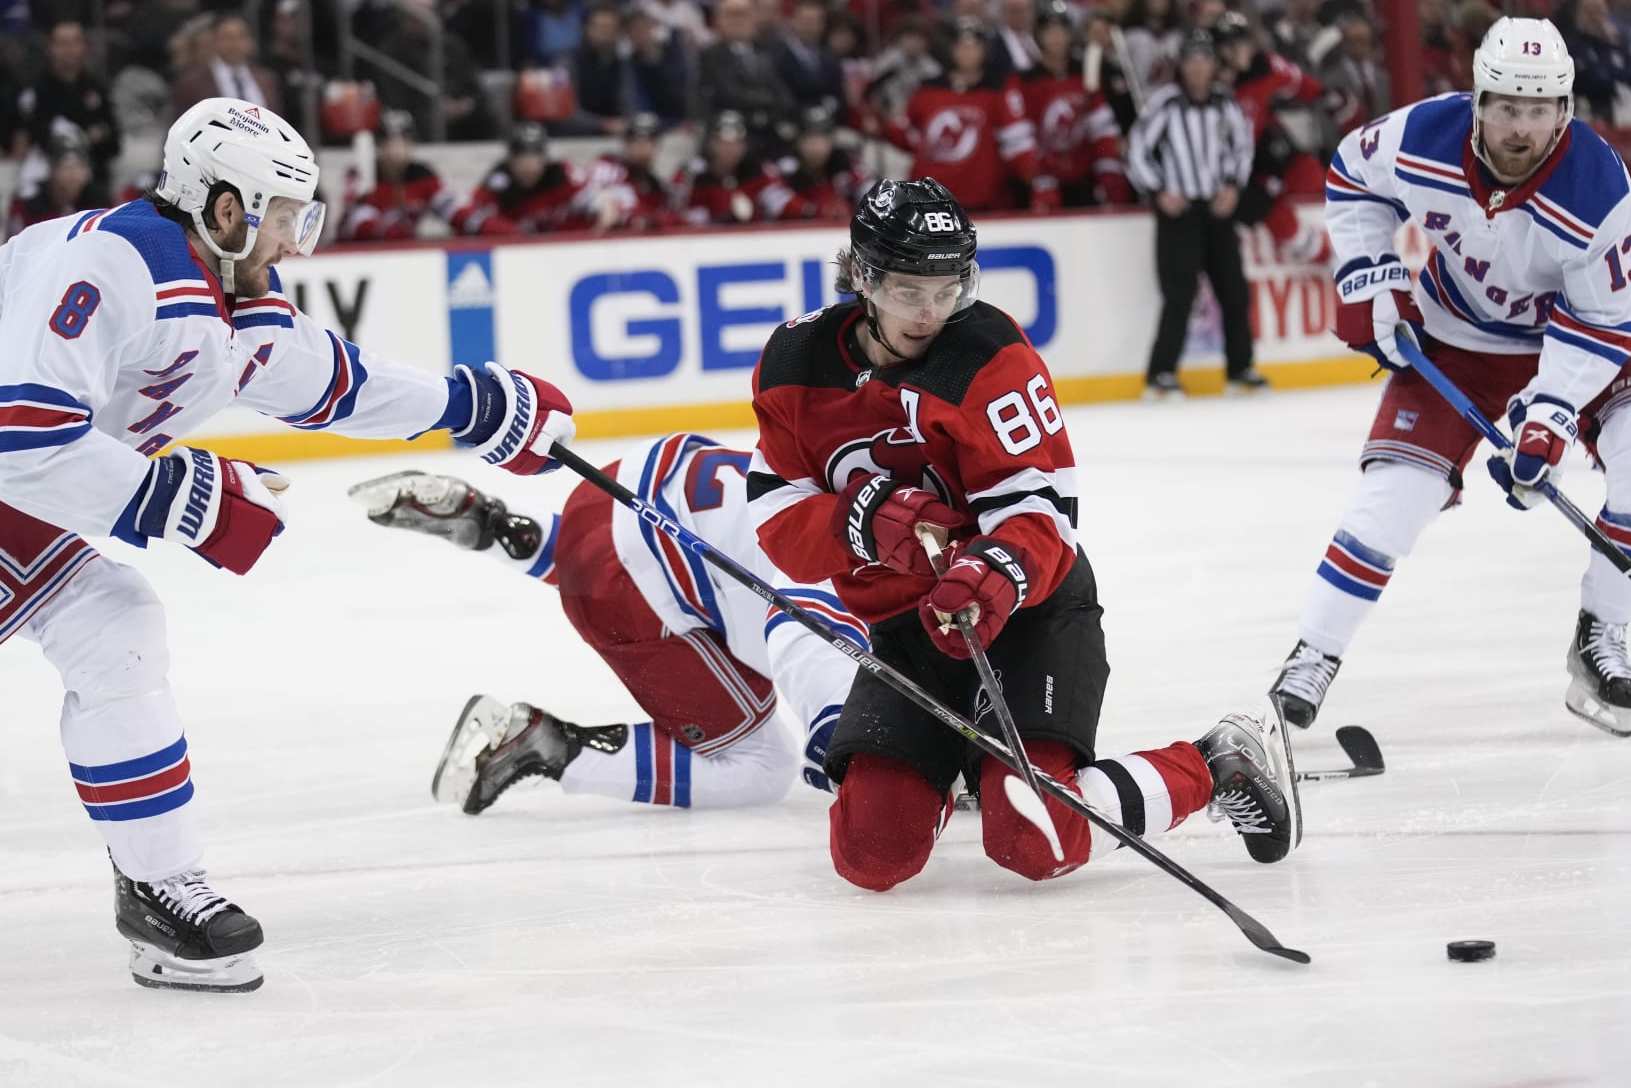 Rangers vs. Devils: Three keys to Game 2 on Thursday